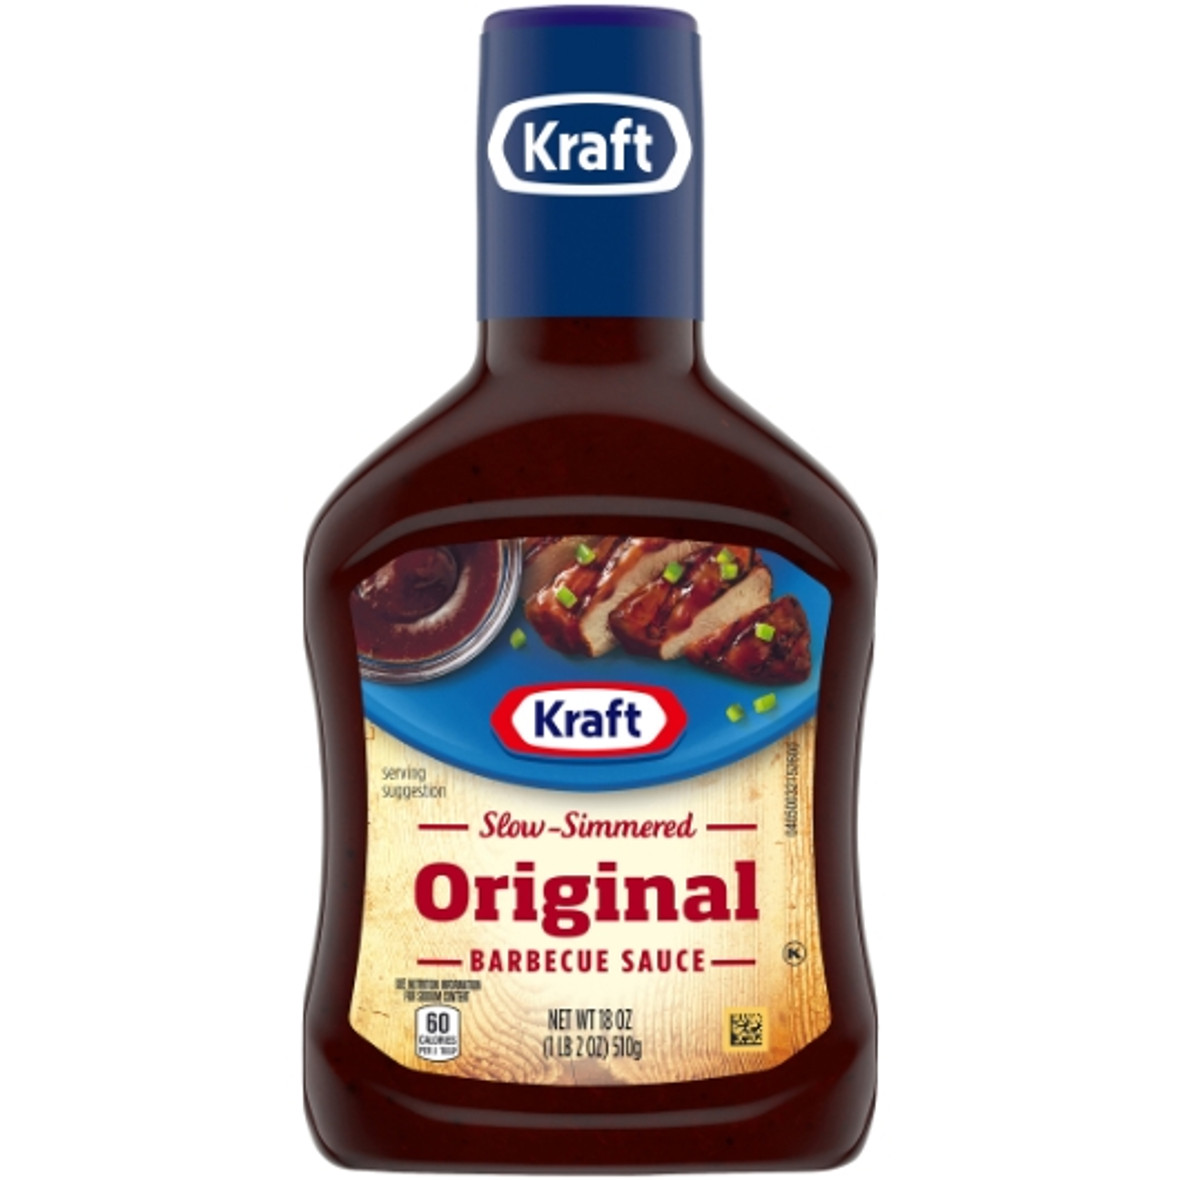 Kraft Original Bbq Sauce Bottle, 1.125 Pound, 12 Per Case